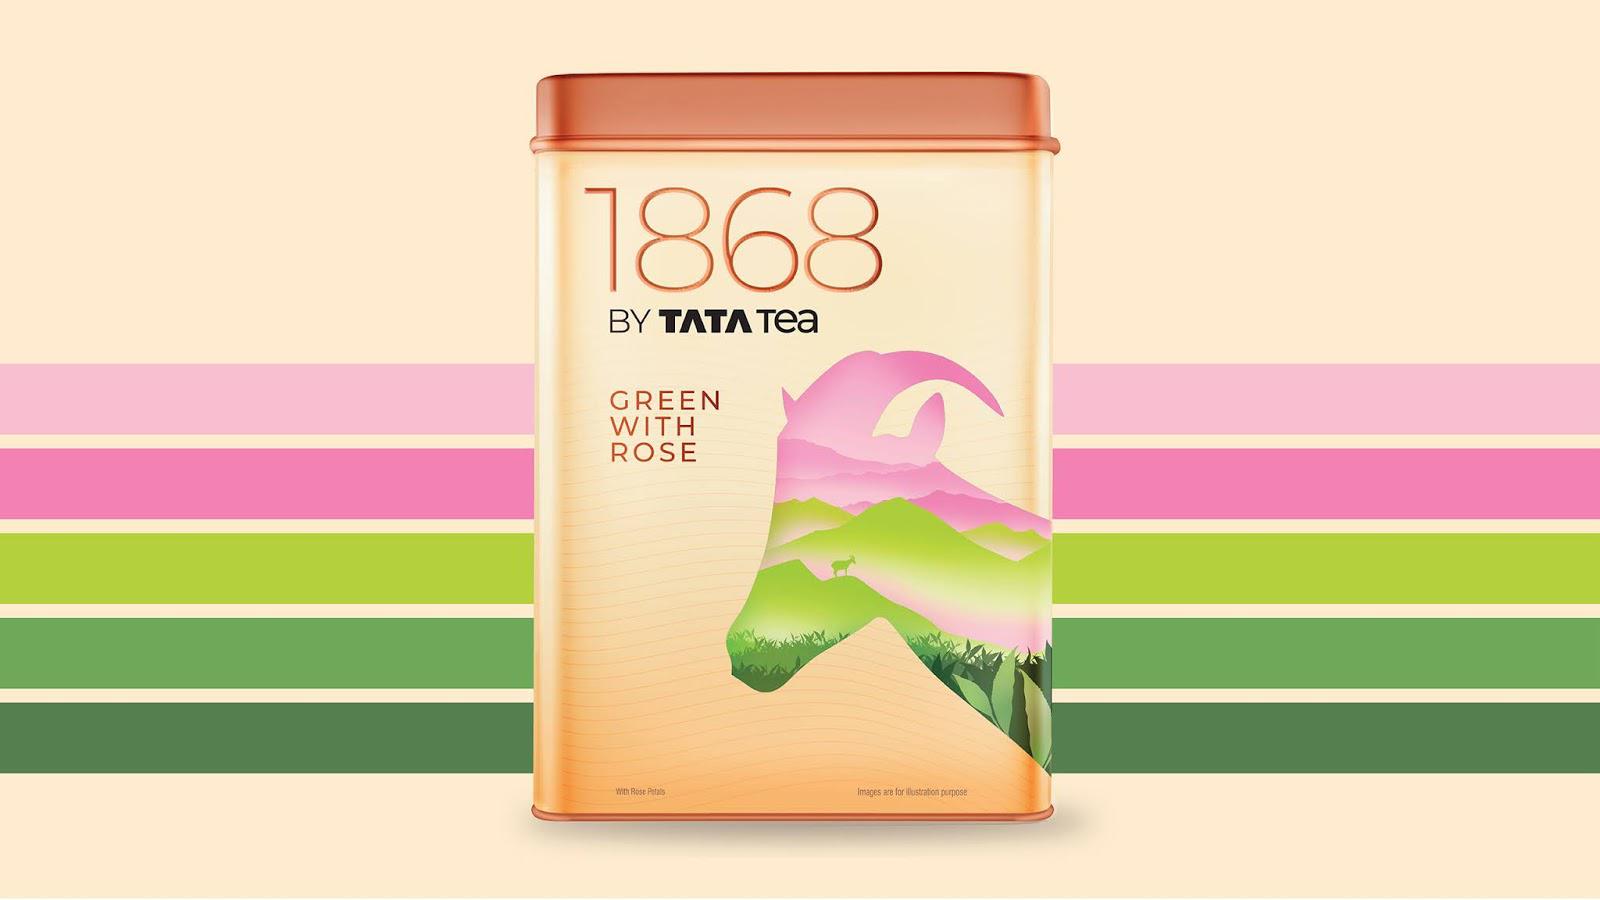 印度茶叶包装设计 印度茶叶包装设计哪家好 年轻人喜欢的茶叶包装设计 第4张